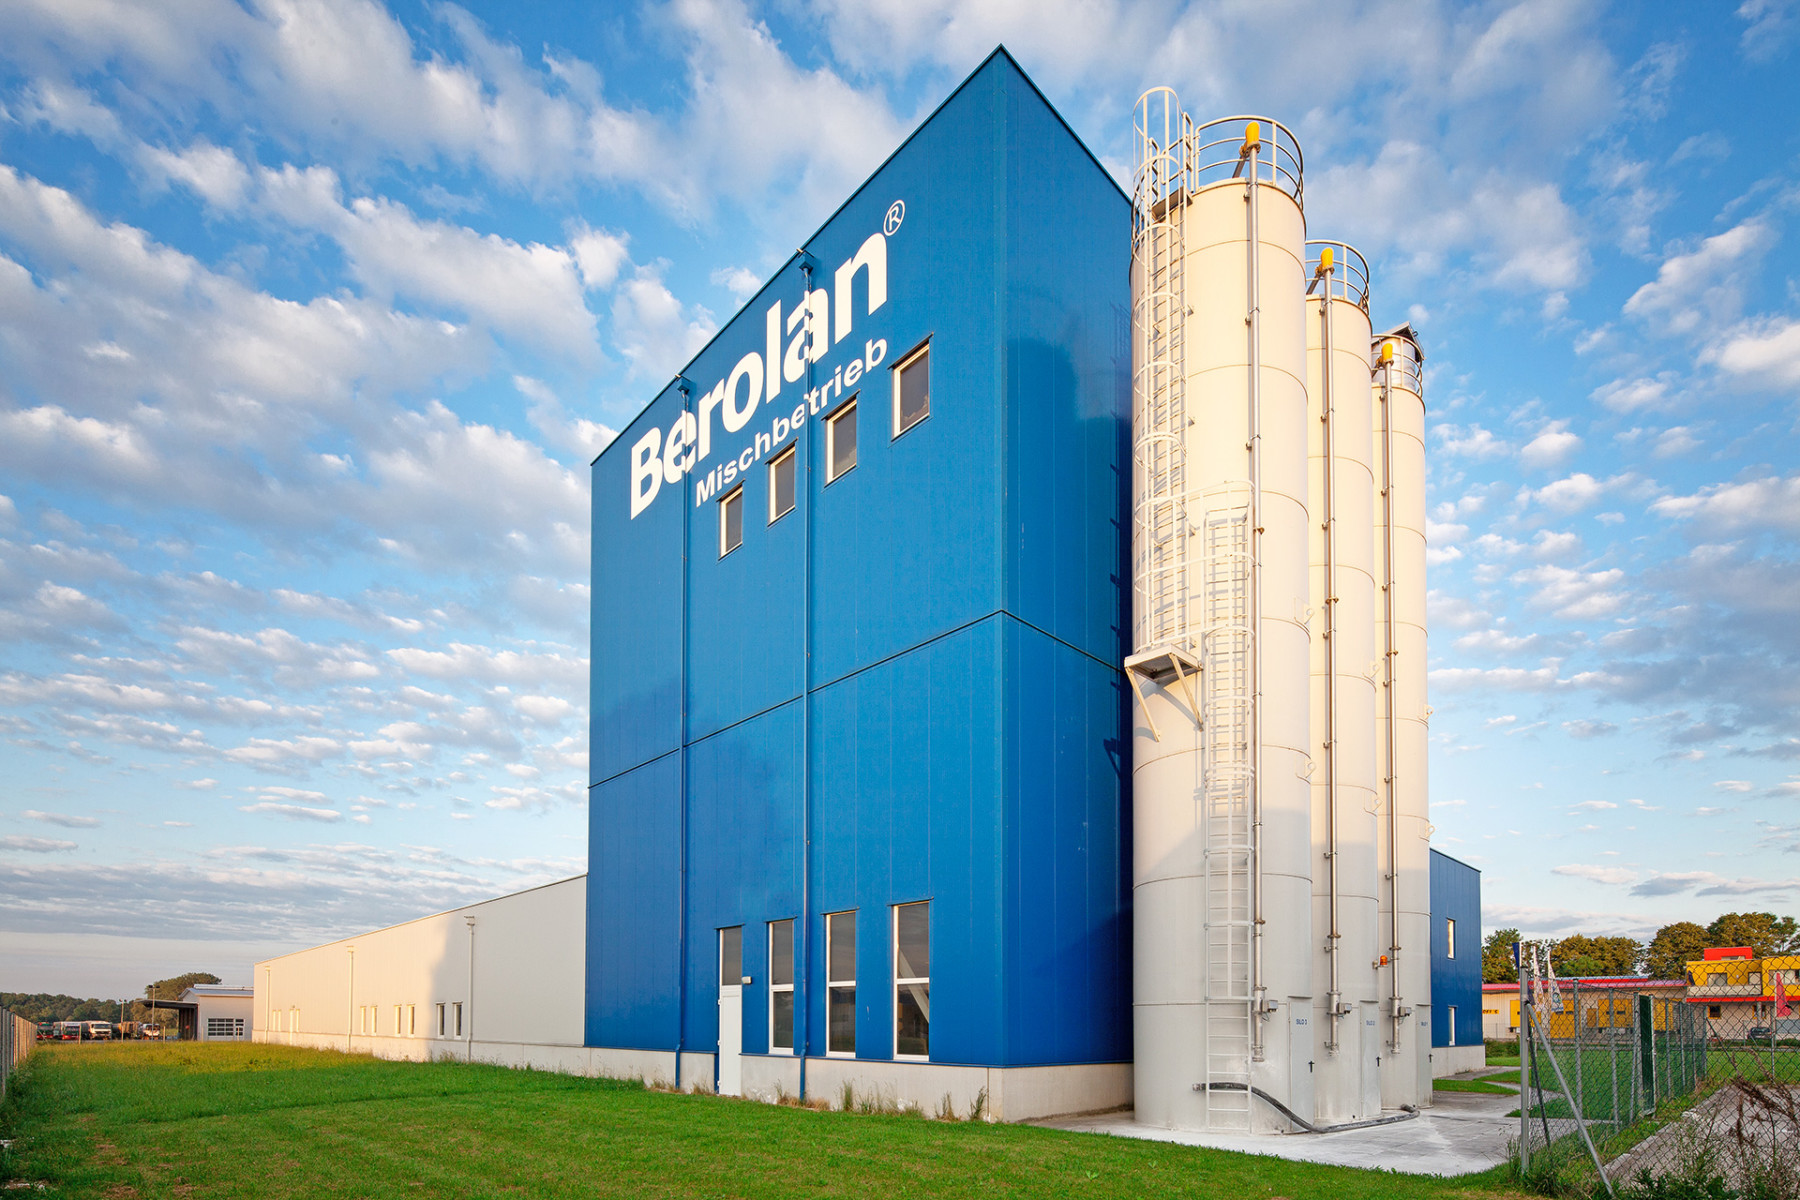 Blaues, hohes Firmengebäude der BEROLAN GmbH mit drei großen Hochsilos